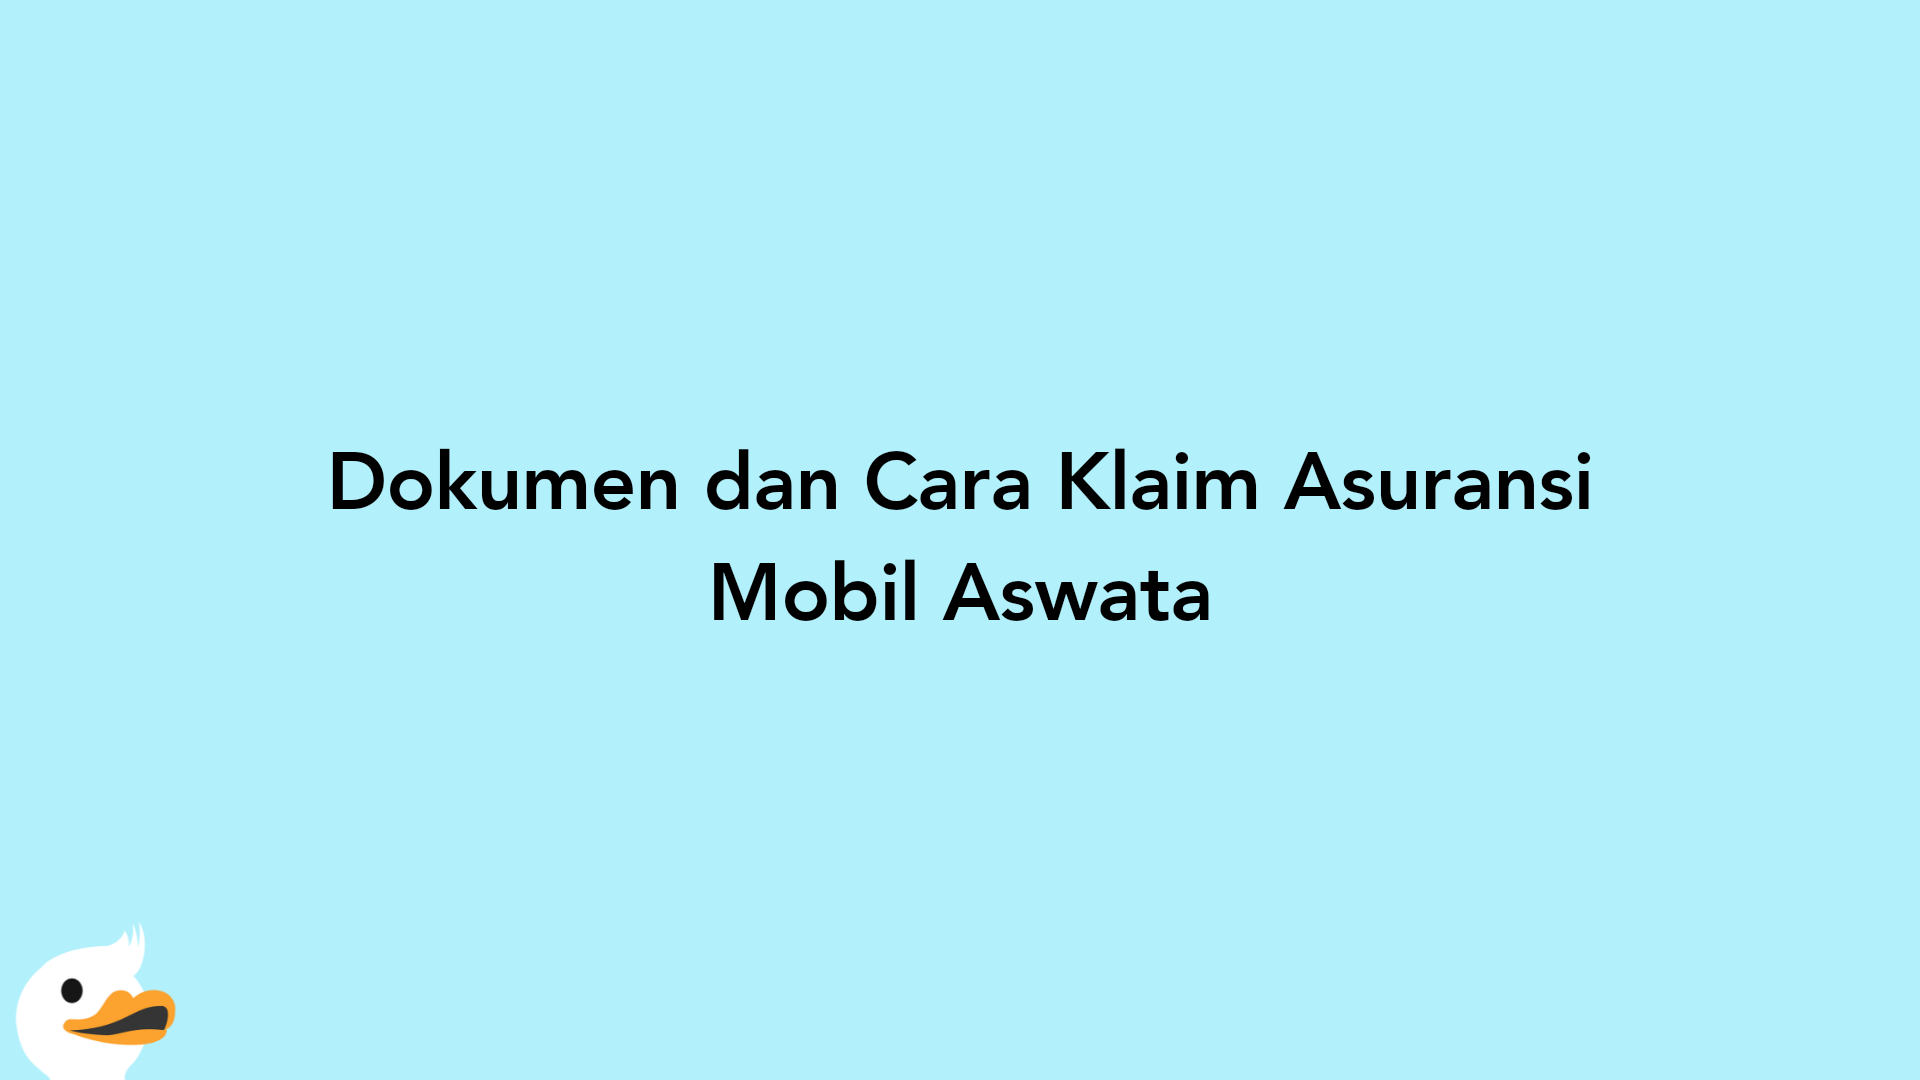 Dokumen dan Cara Klaim Asuransi Mobil Aswata